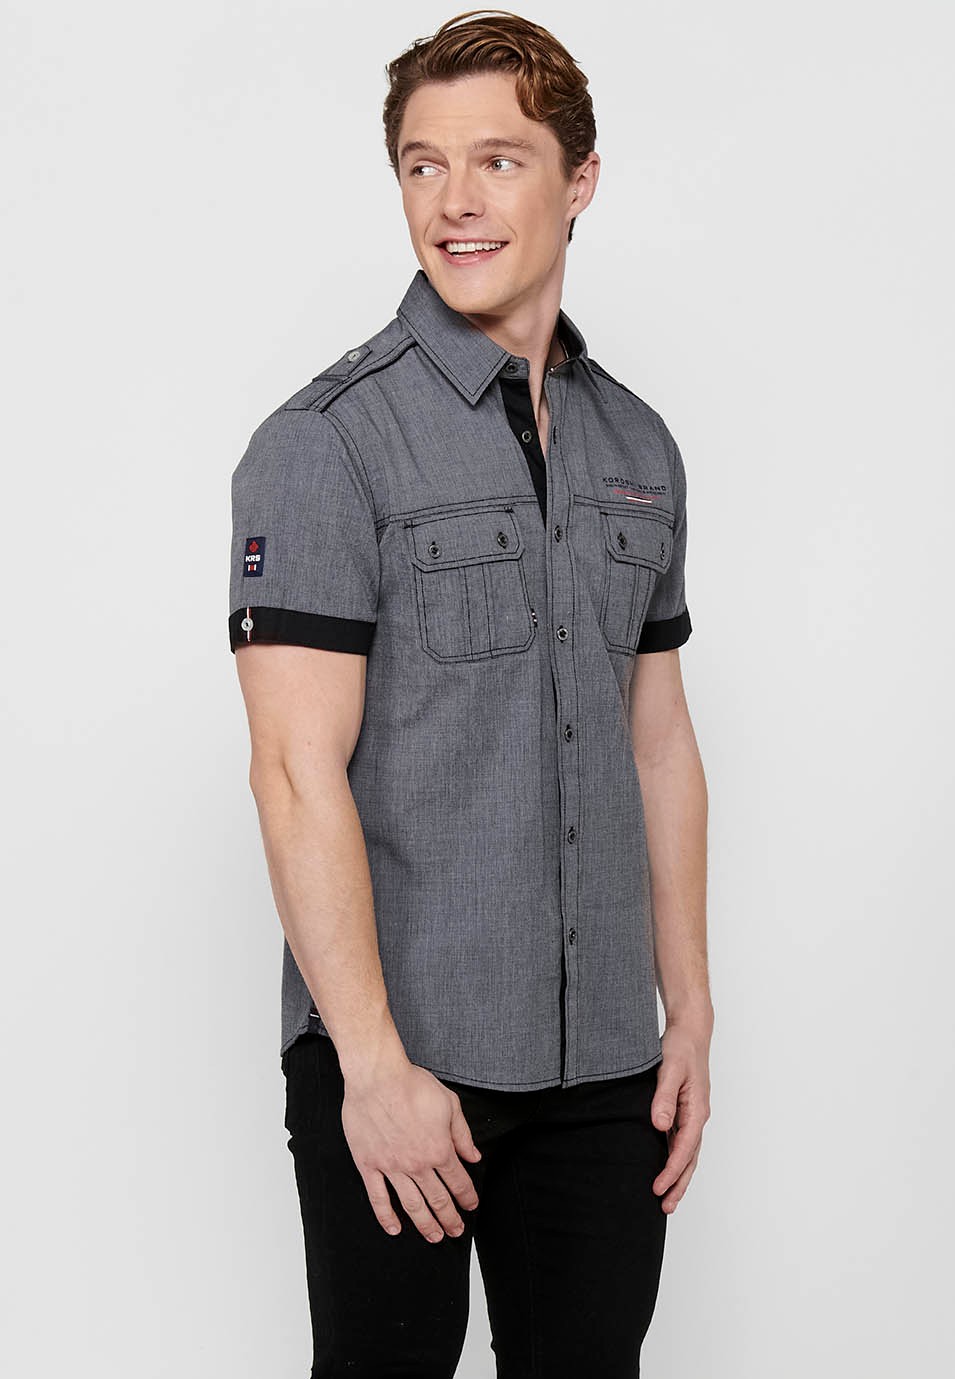 Cotton shirt, short sleeve, shoulder details, white color for men